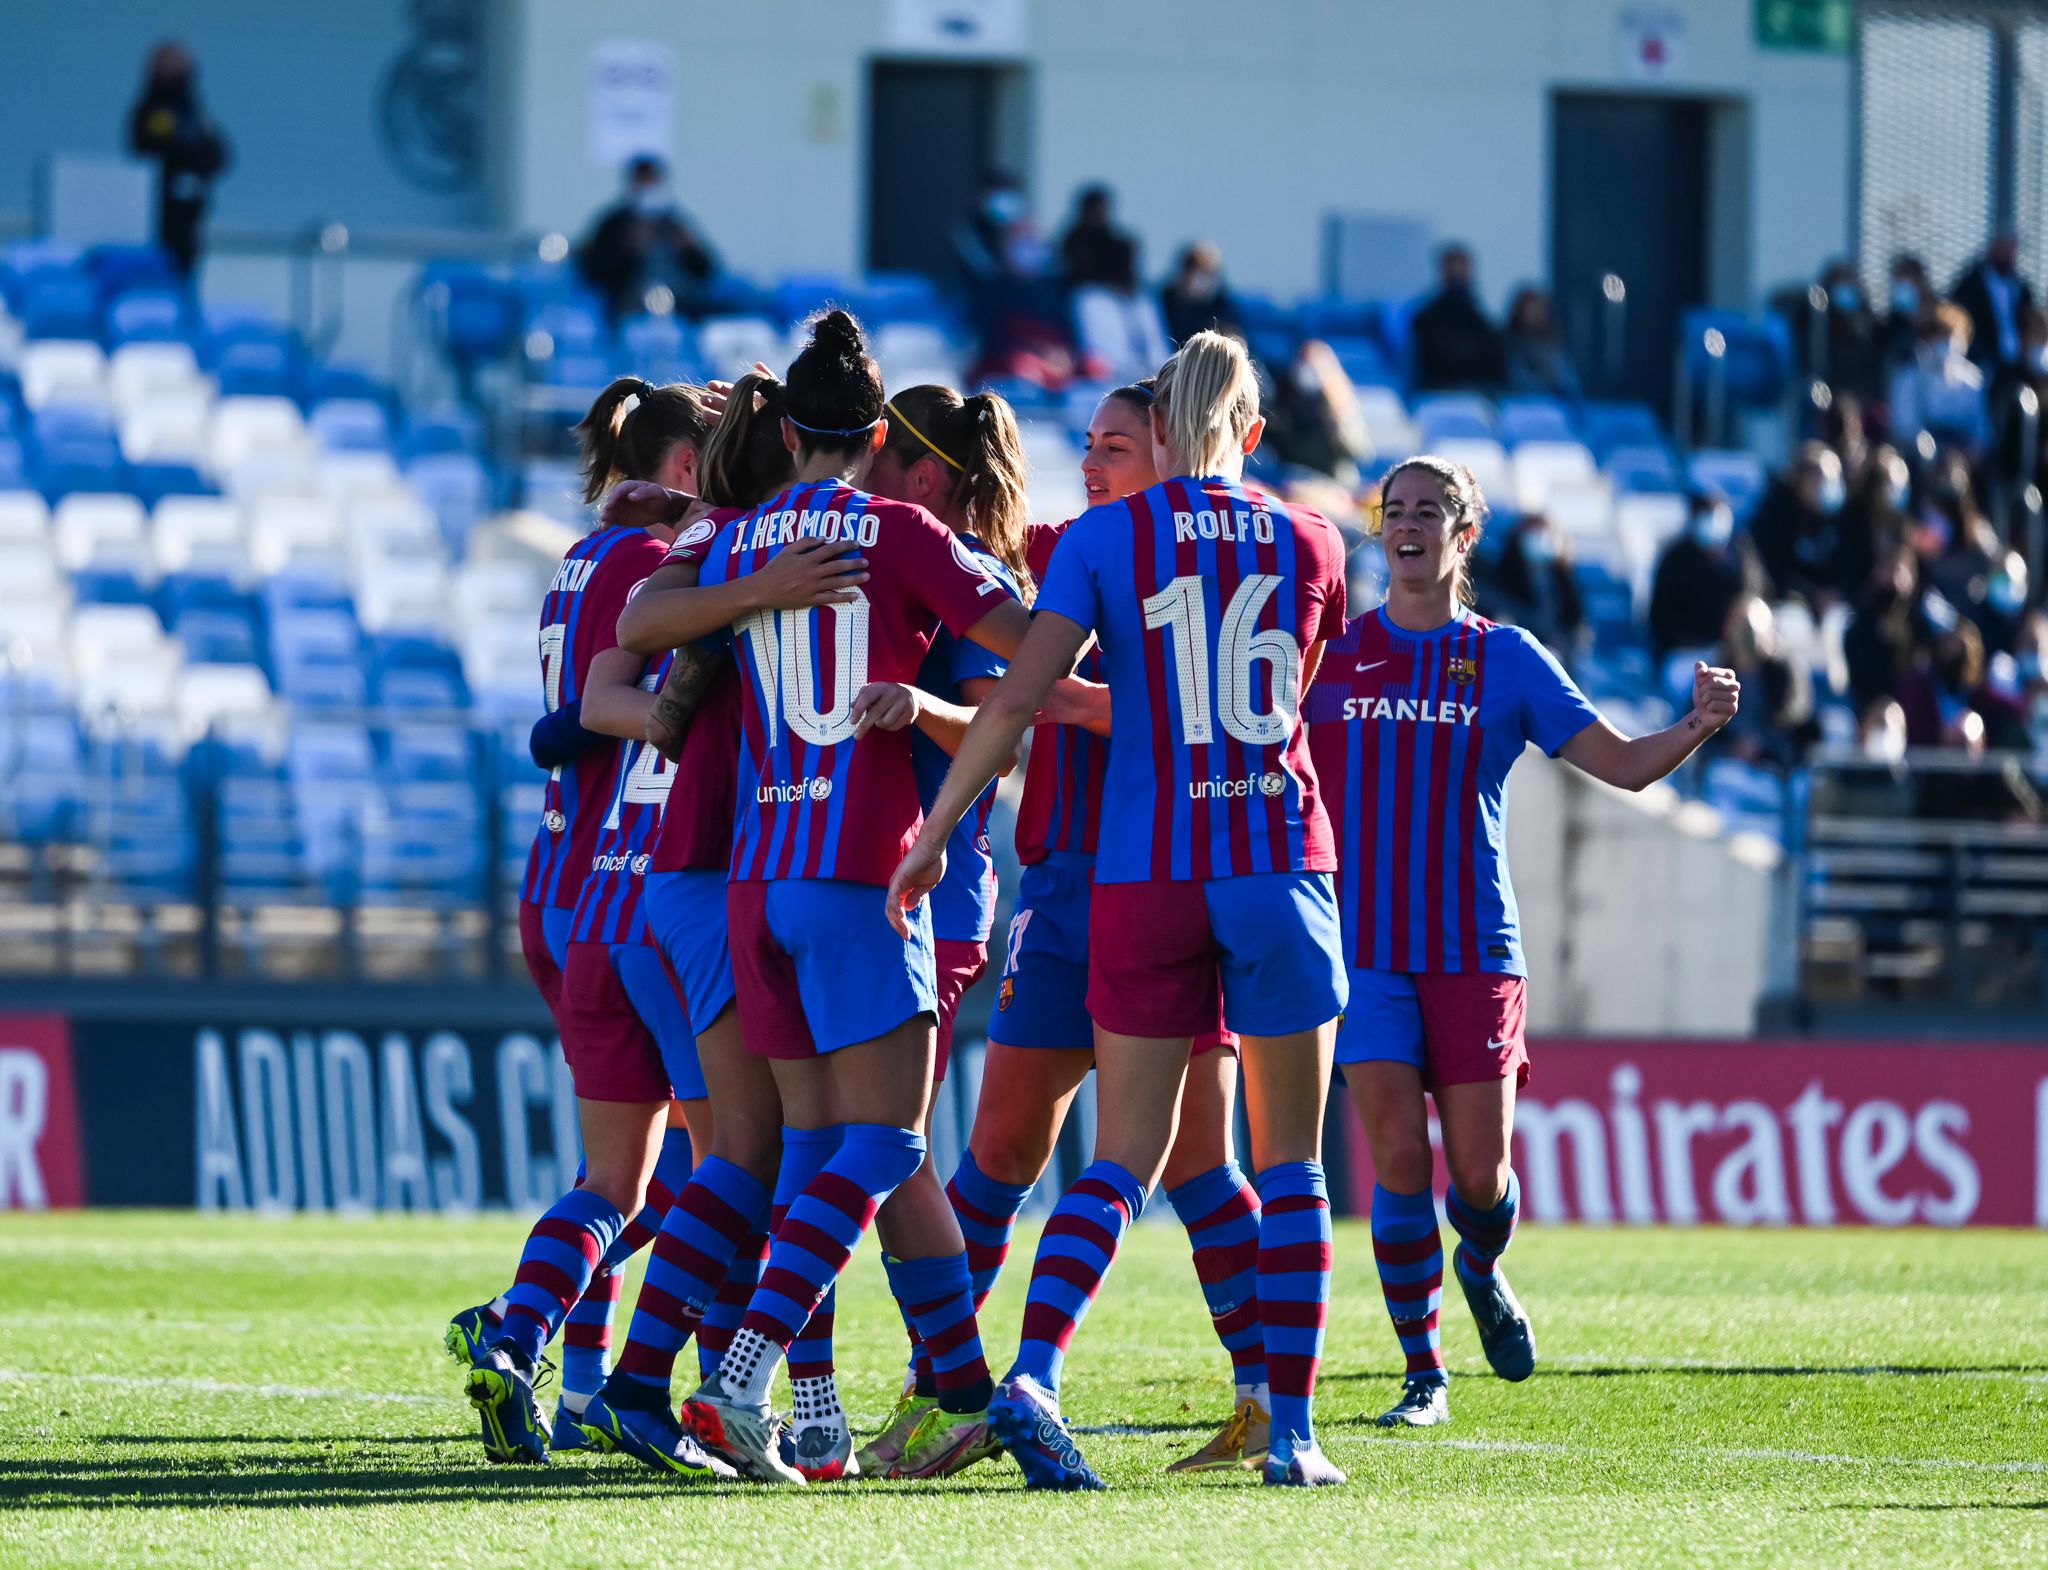 El Barça femenino se lleva el primer Clásico de la temporada (1-3)